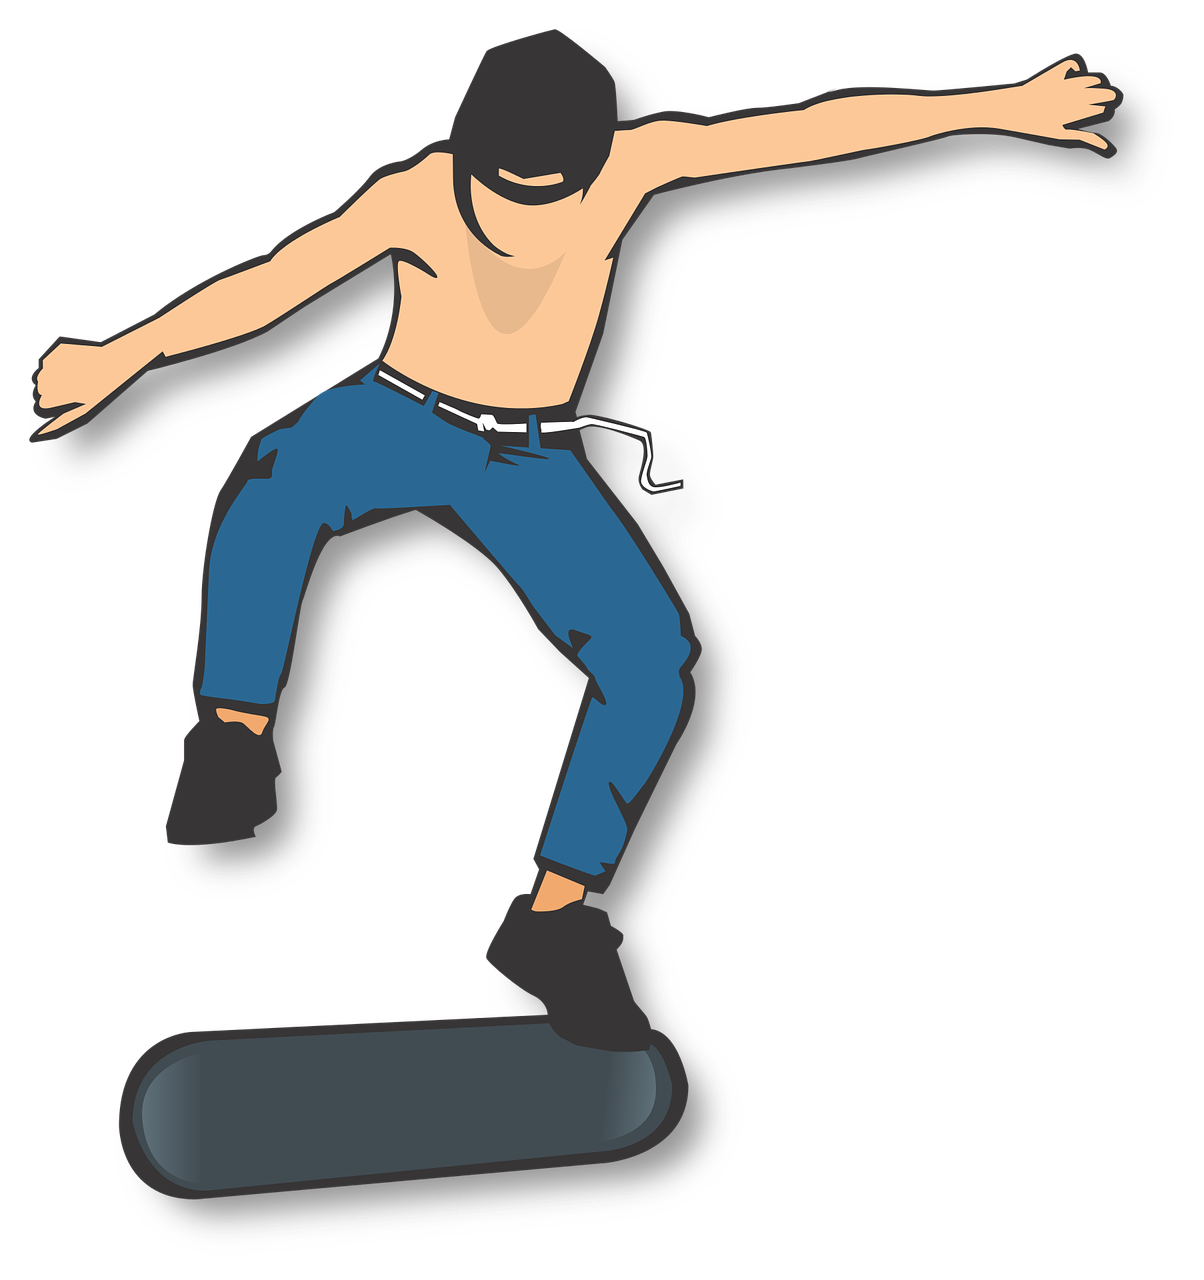 skater kick flip shirtless free photo